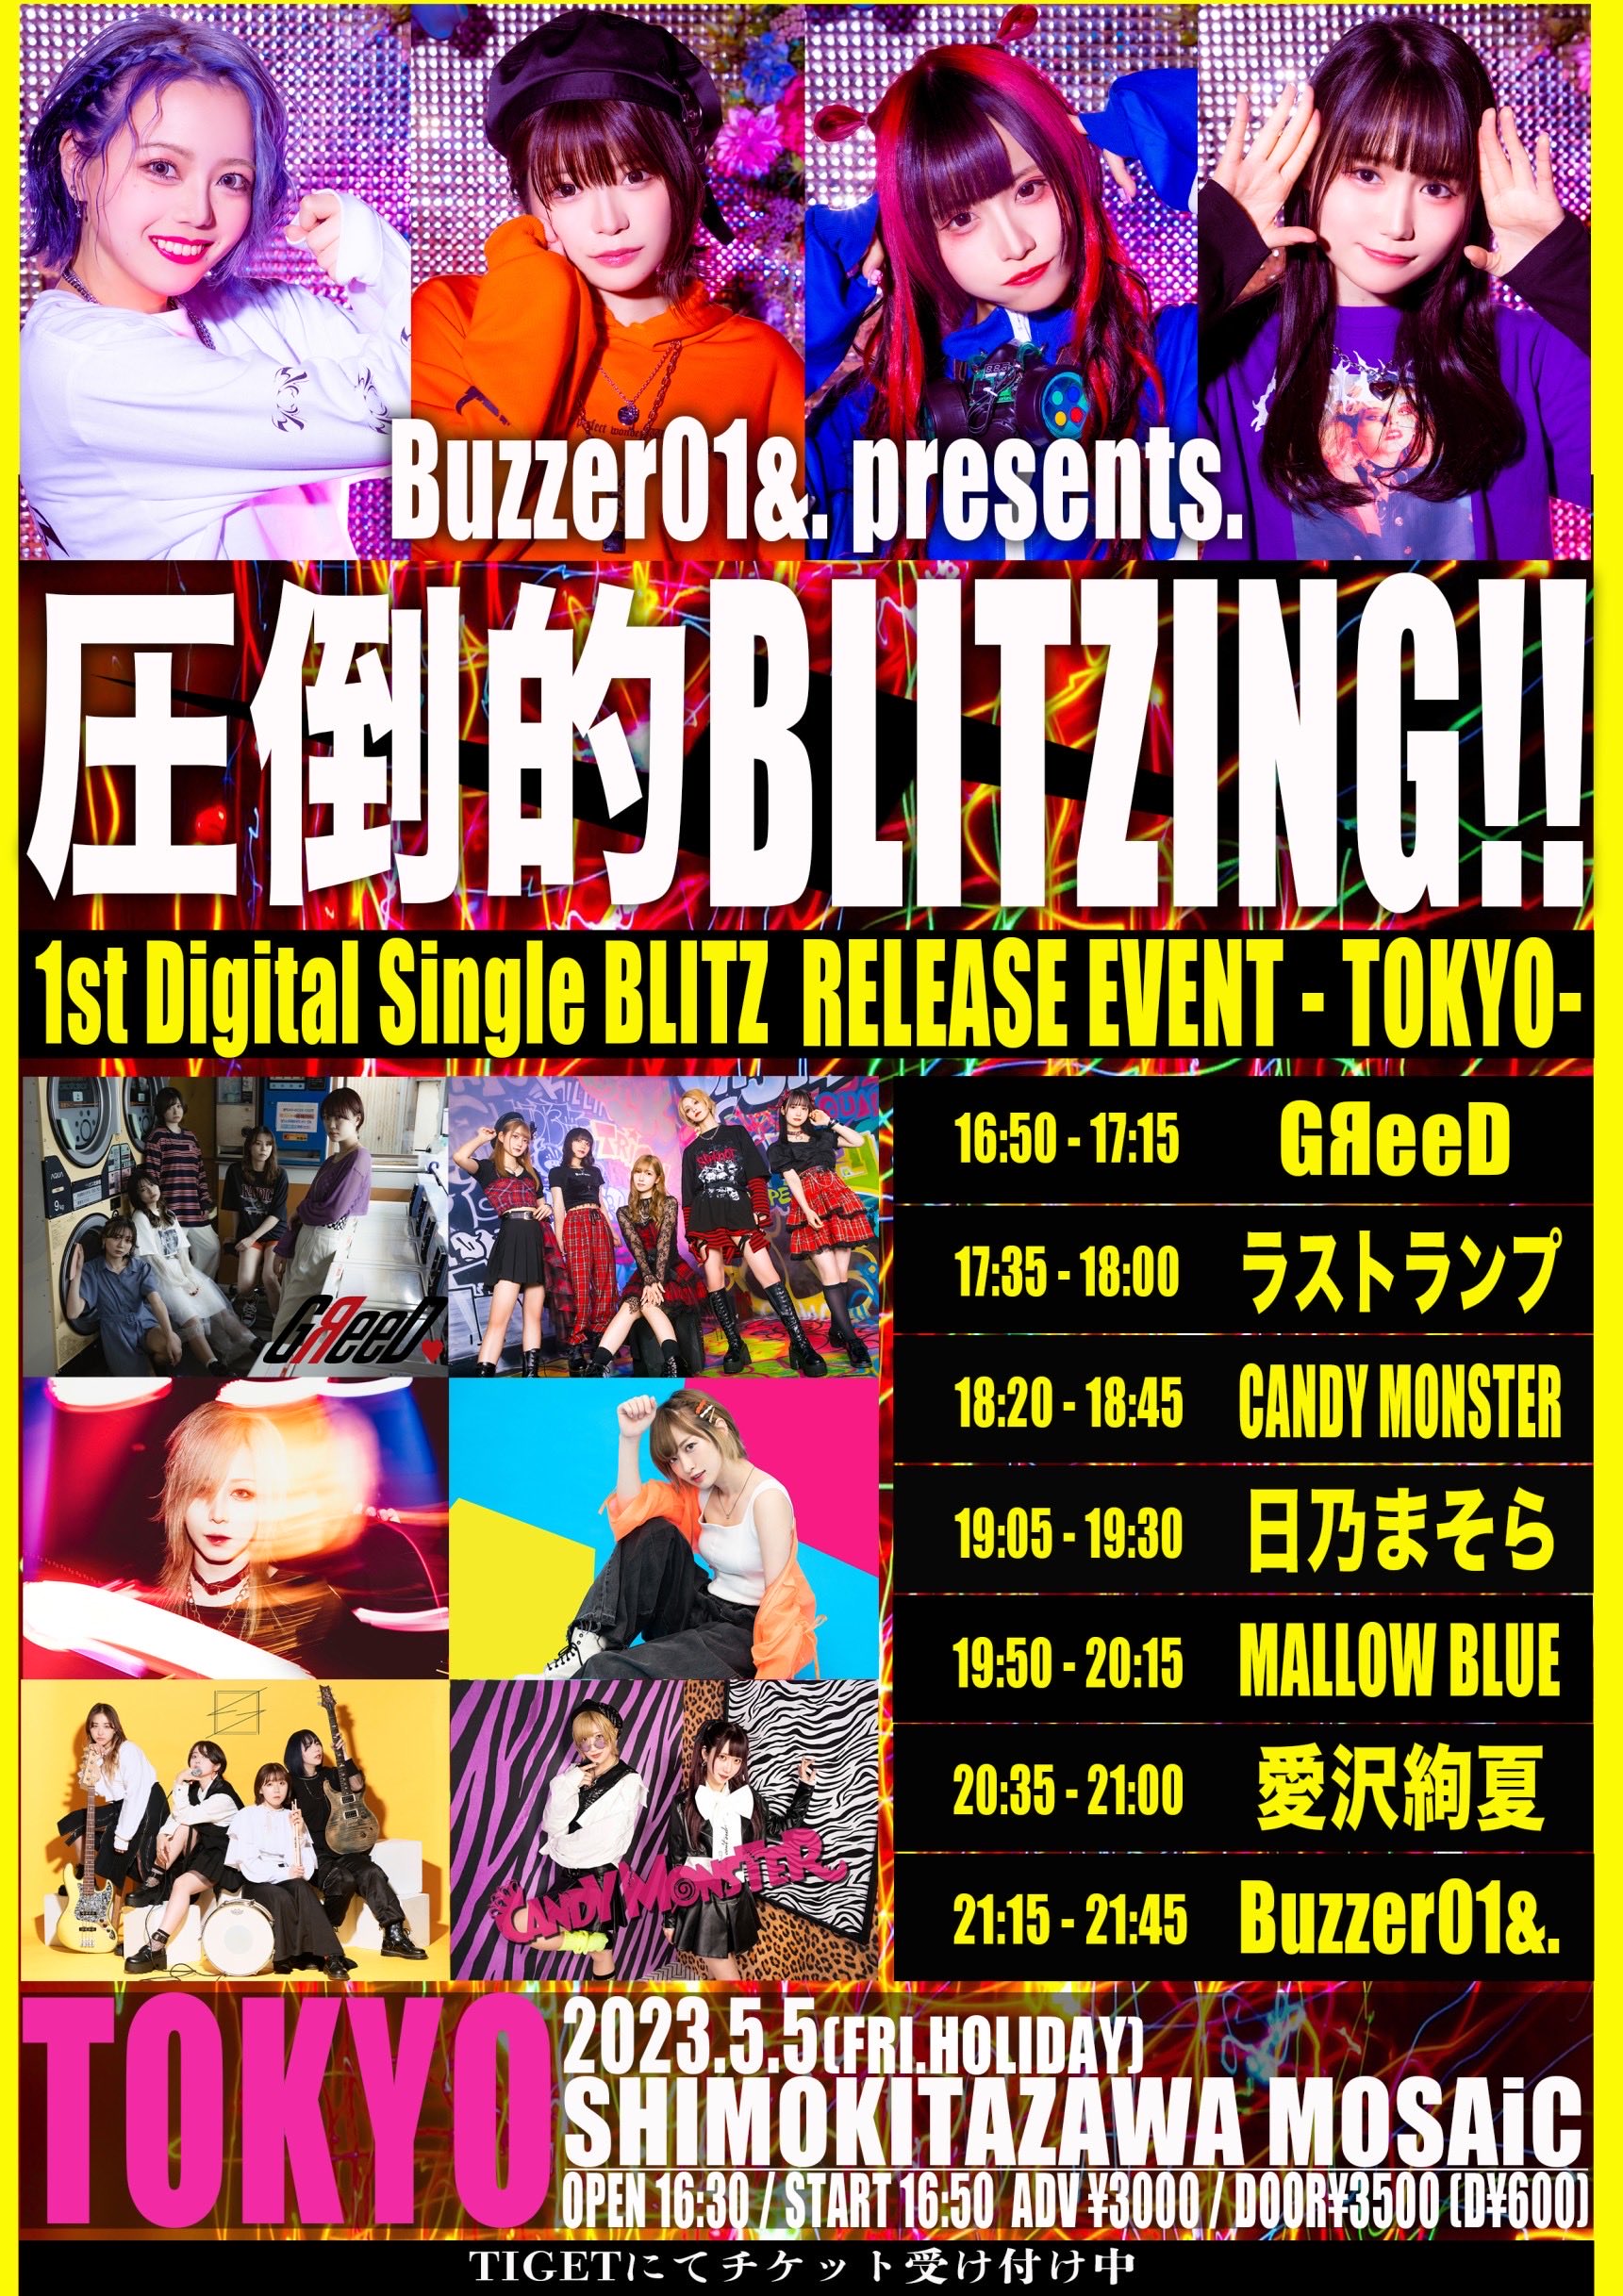 星井あおサポート出演公演(Buzzer01&. ＆ MALLOW BLUE)Buzzer01&. presents. 【圧倒的BLITZING!! -TOKYO-】